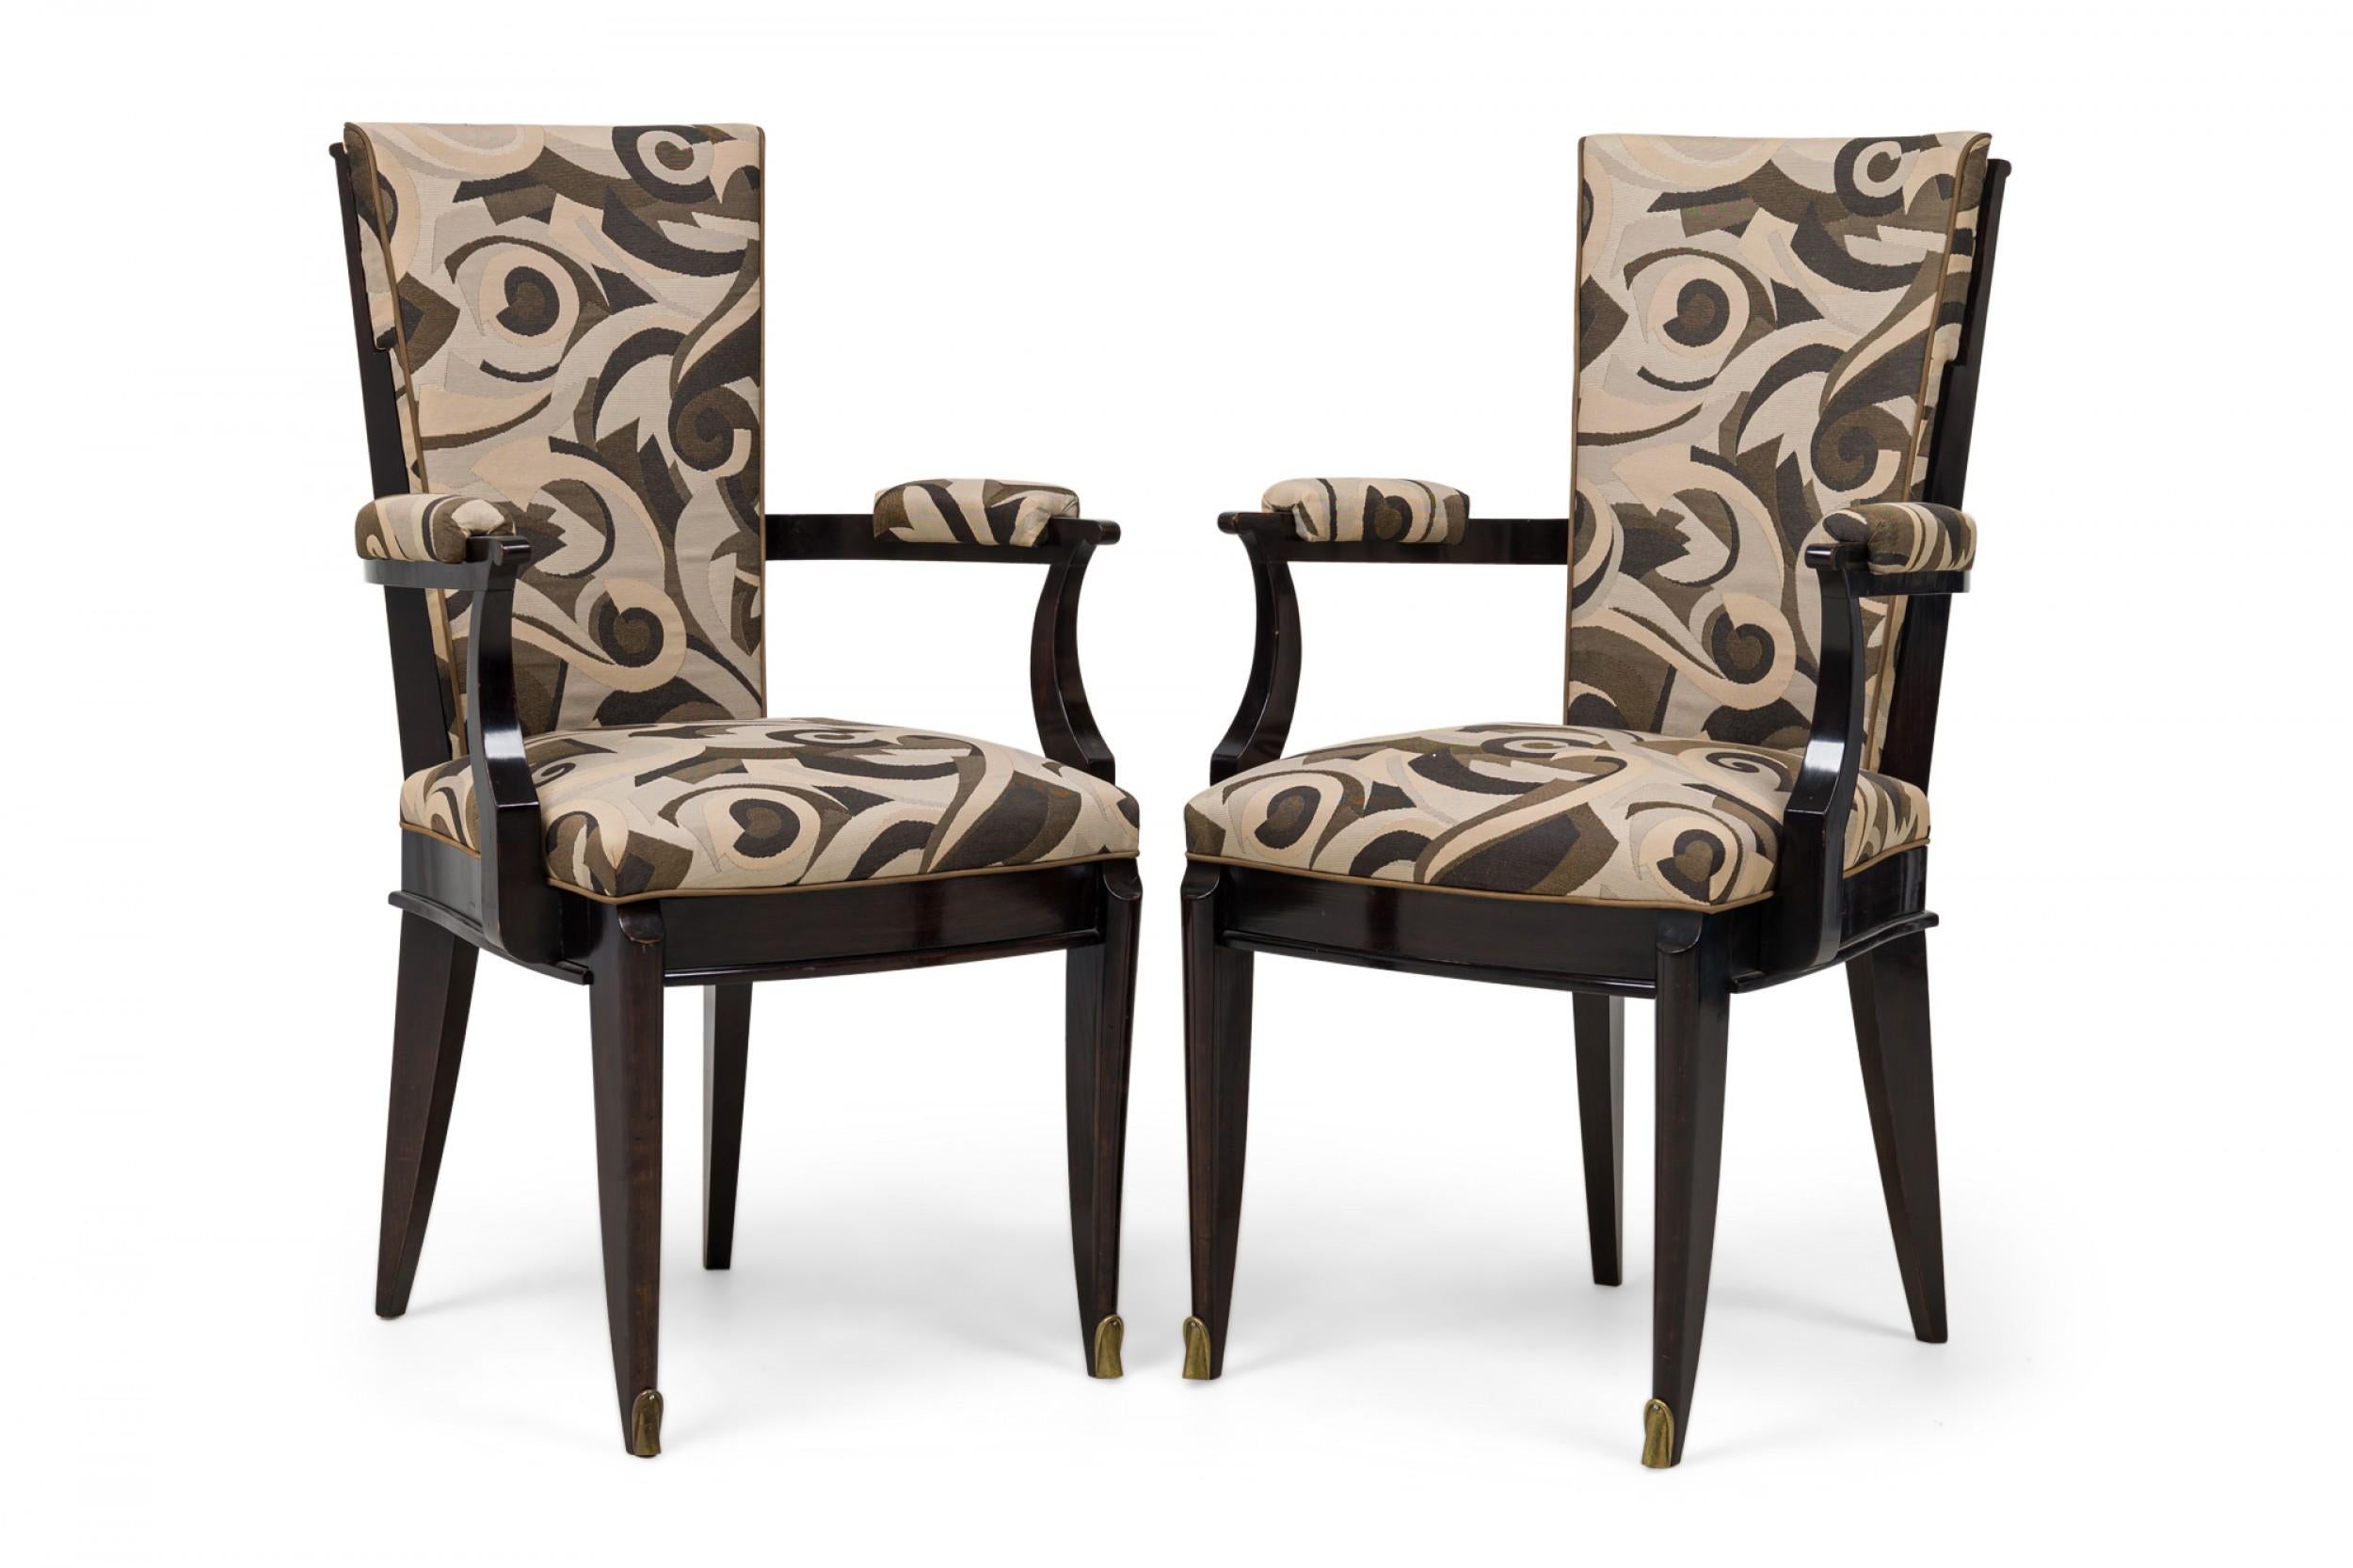 Ensemble de 6 fauteuils en ébène de Macassar de style Art Déco français, à dossier rectangulaire fuselé, accoudoirs en volute, garnis d'un tissu à motifs géométriques de couleur terre avec passepoil, frise moulurée, les 2 pieds avant évasés avec